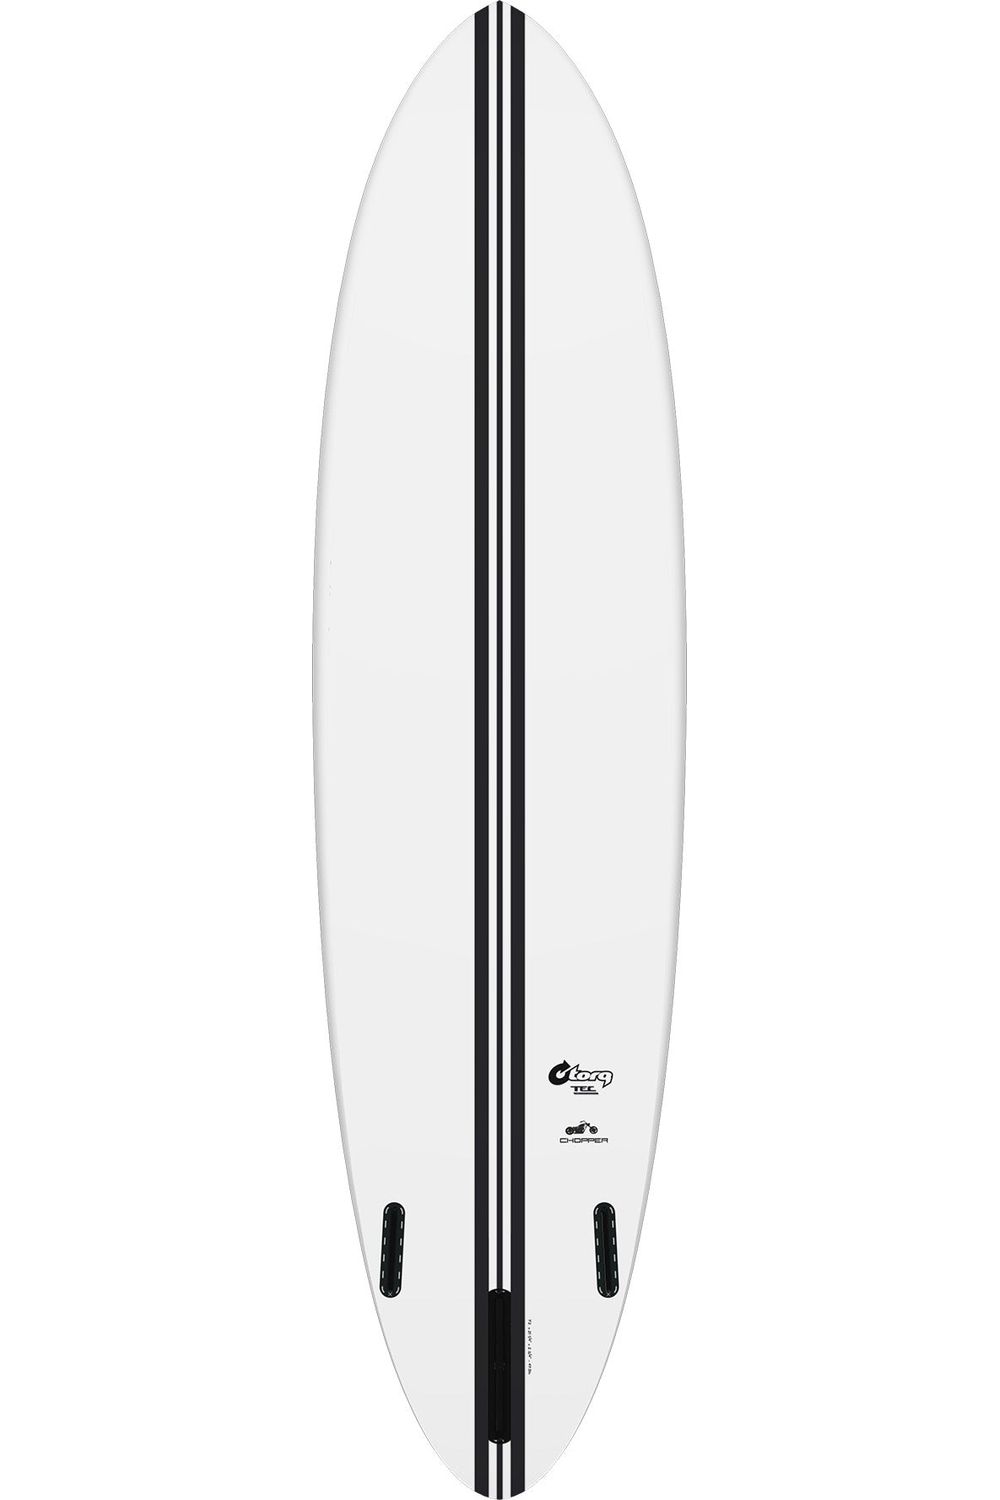 Torq TEC Chopper Surfboard In White (Gen 2)